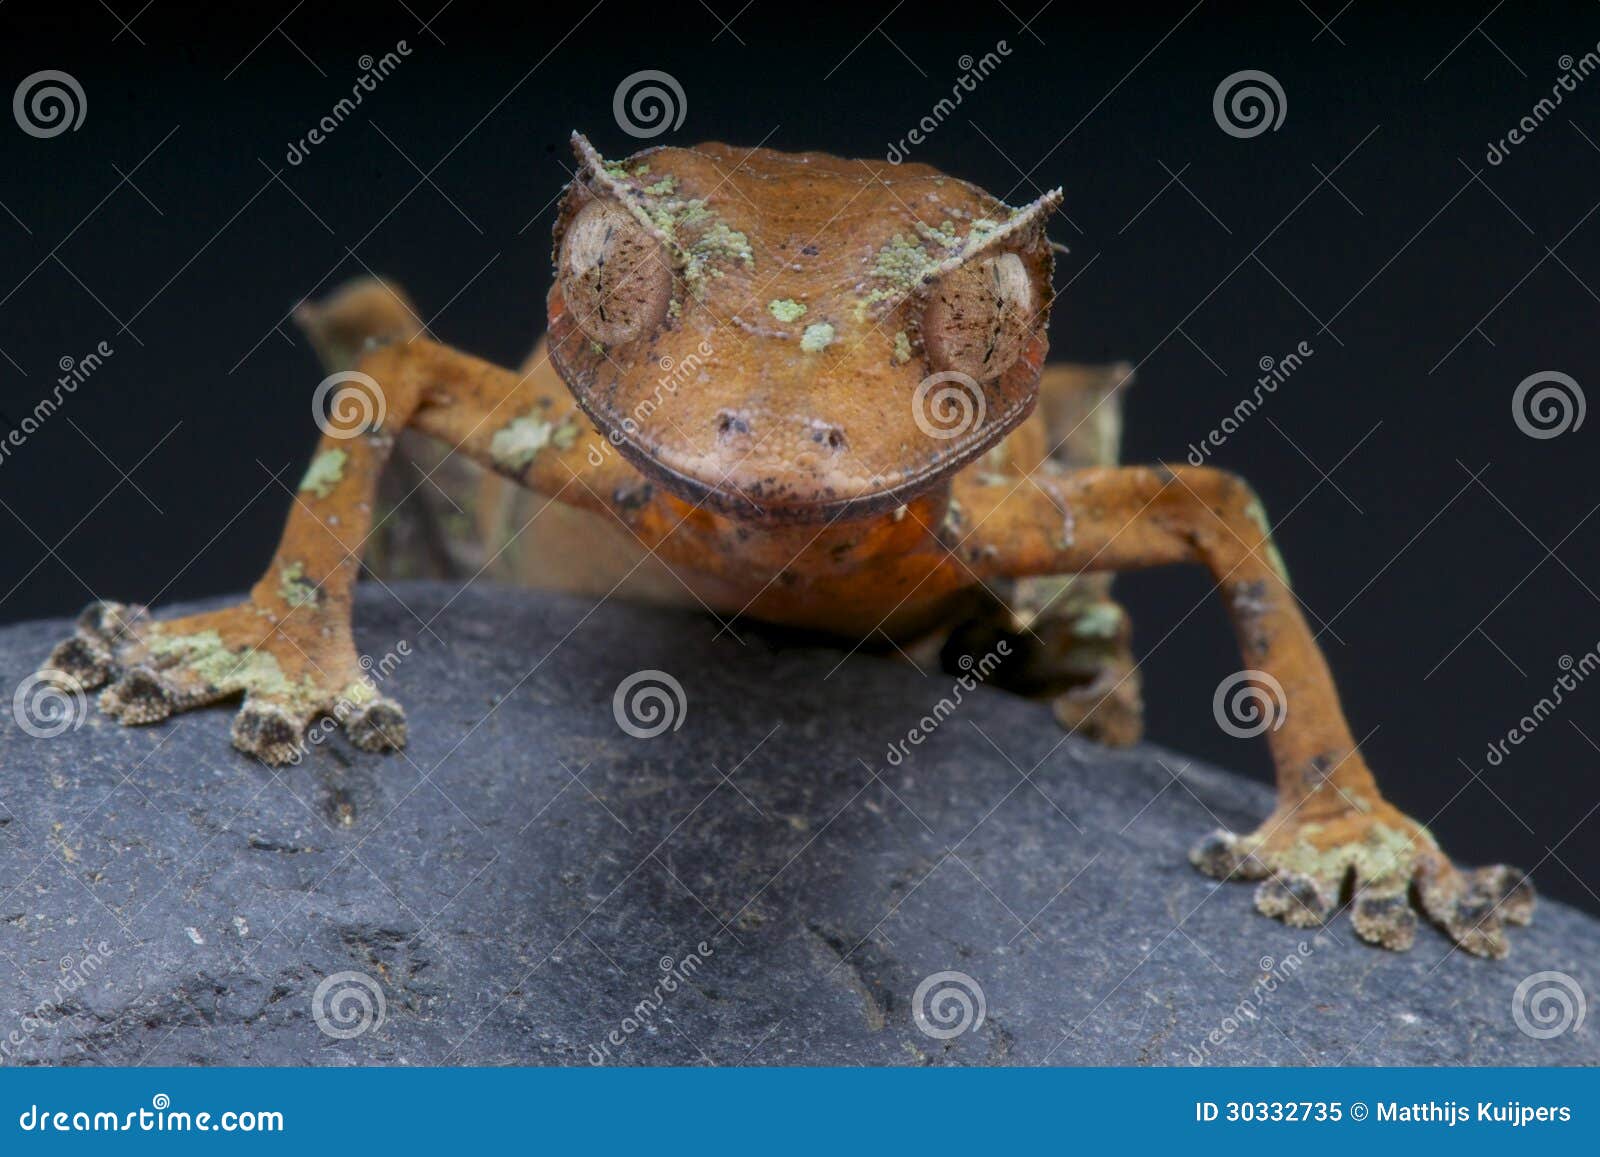 satanic leaf-tailed gecko / uroplatus phantasticus